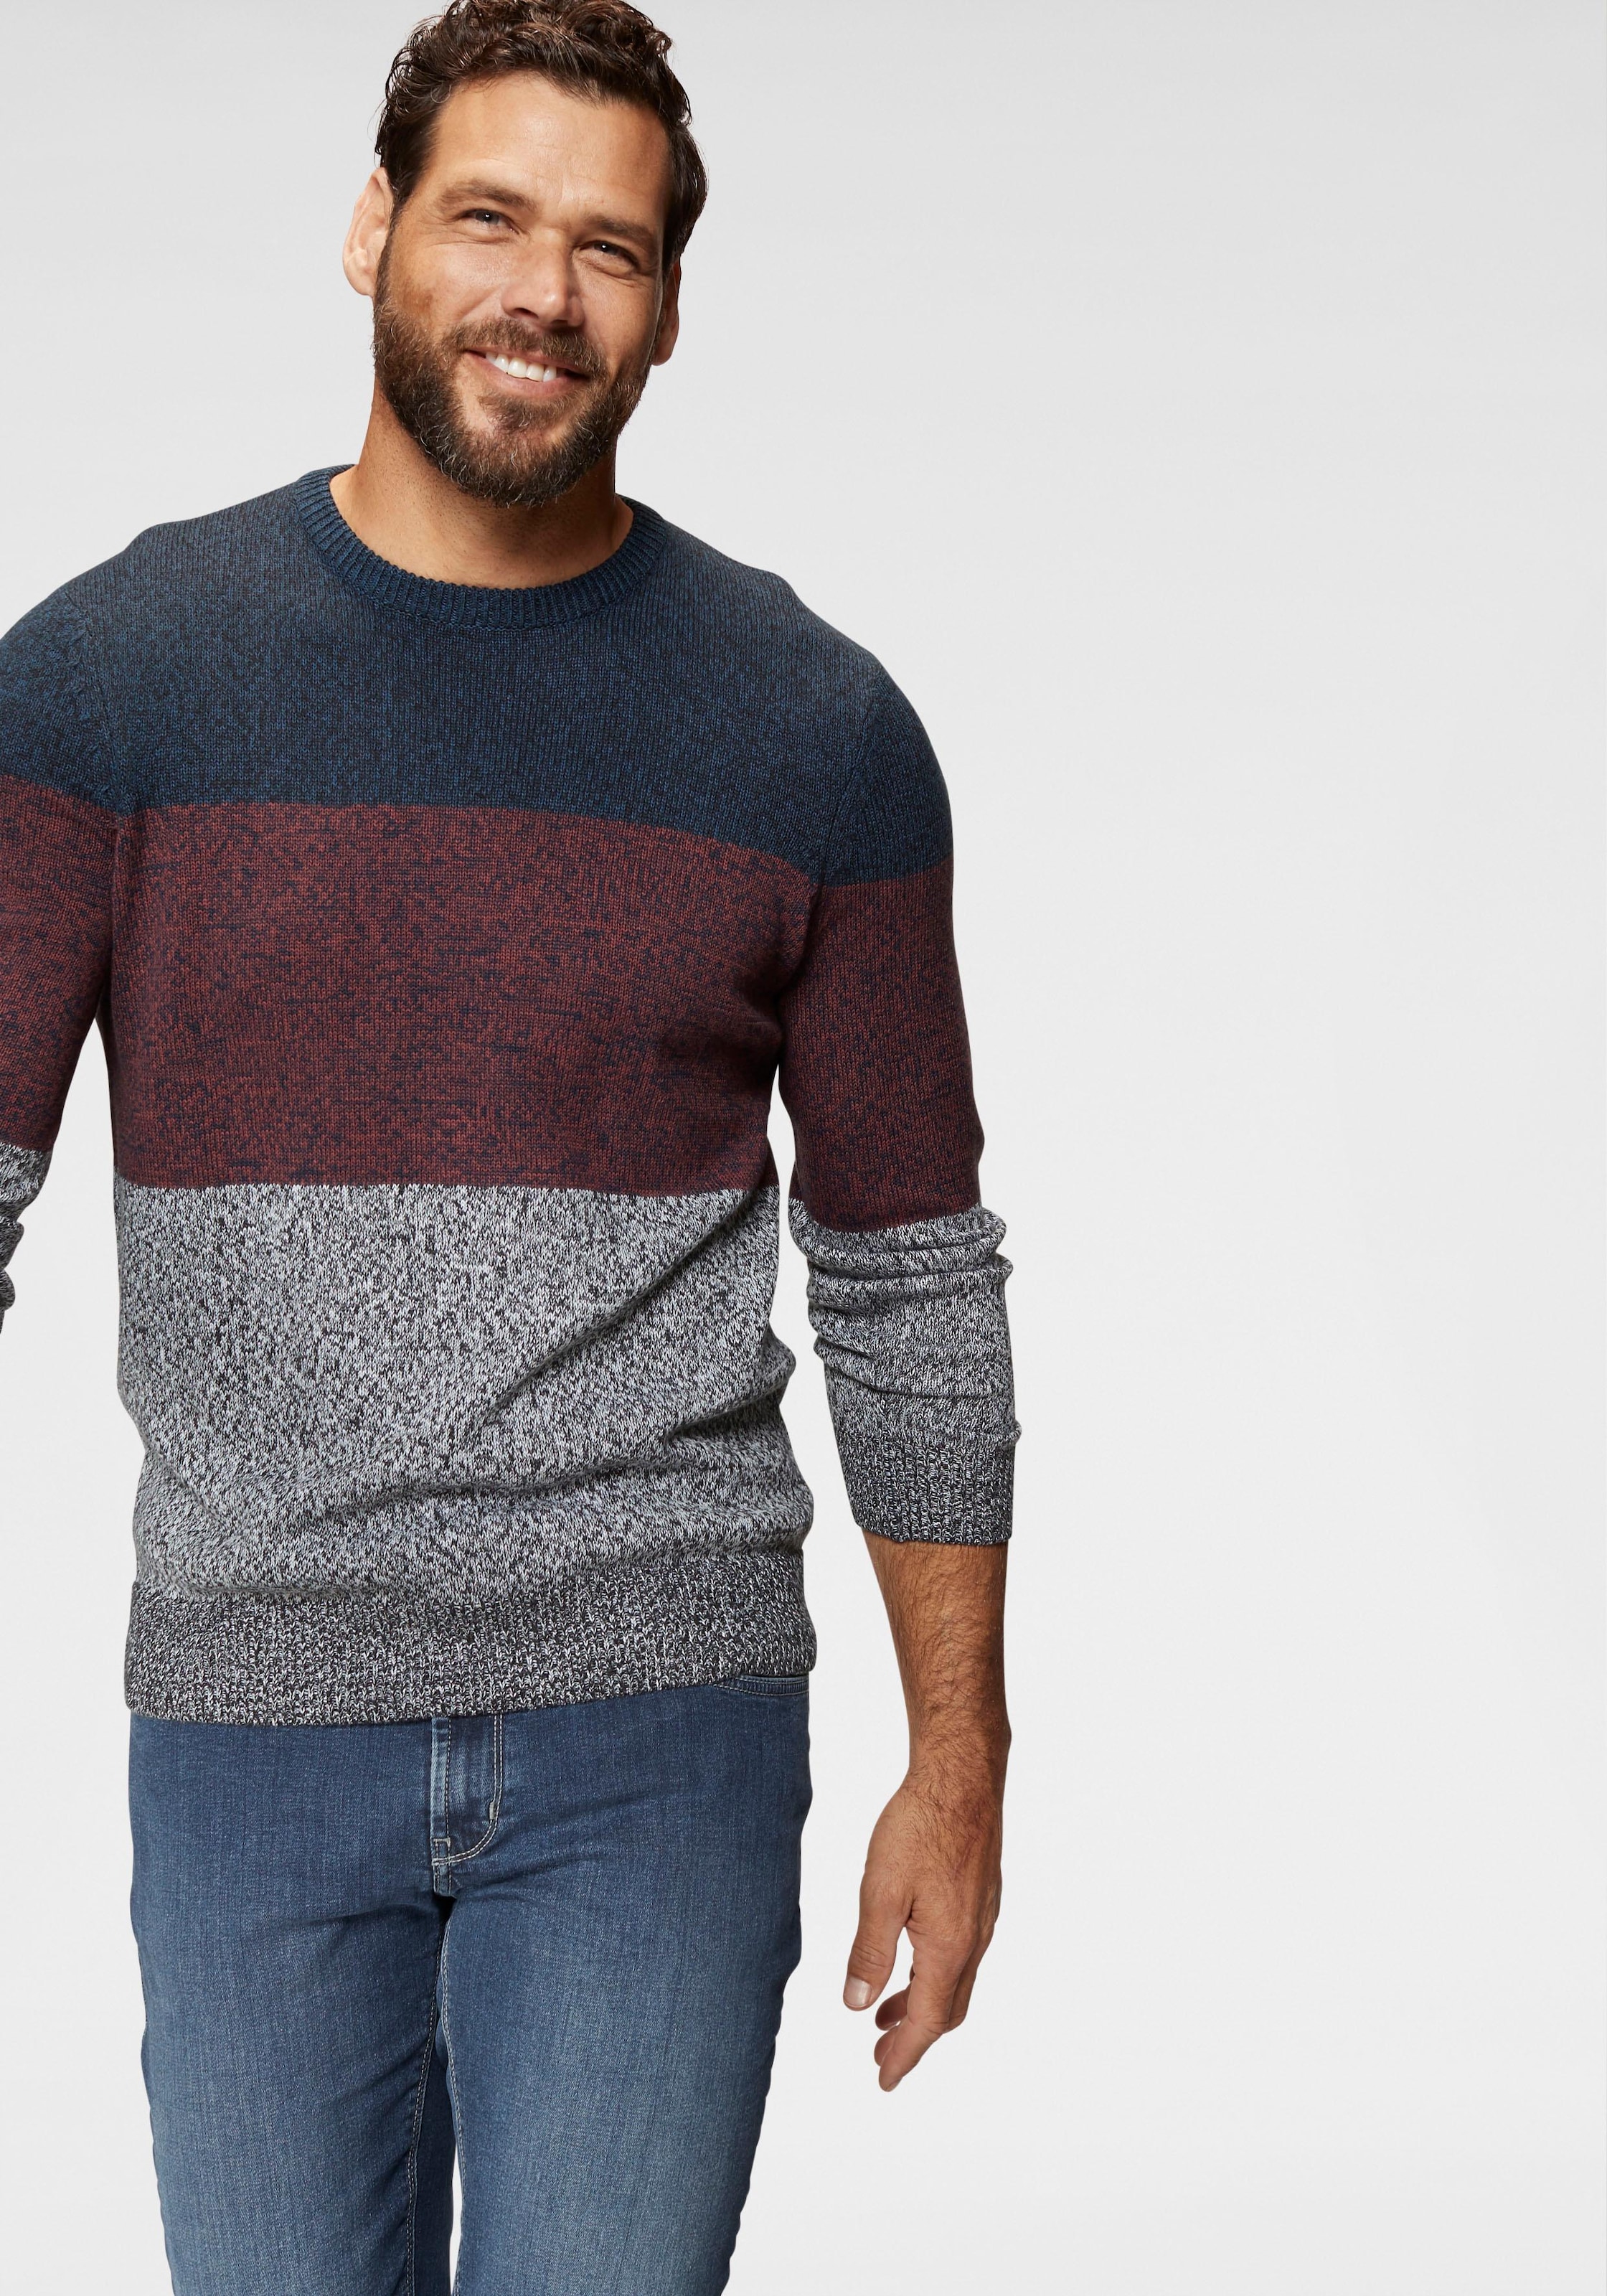 HERREN Pullovers & Sweatshirts Casual Mehrfarbig M Reybor sweatshirt Rabatt 70 % 